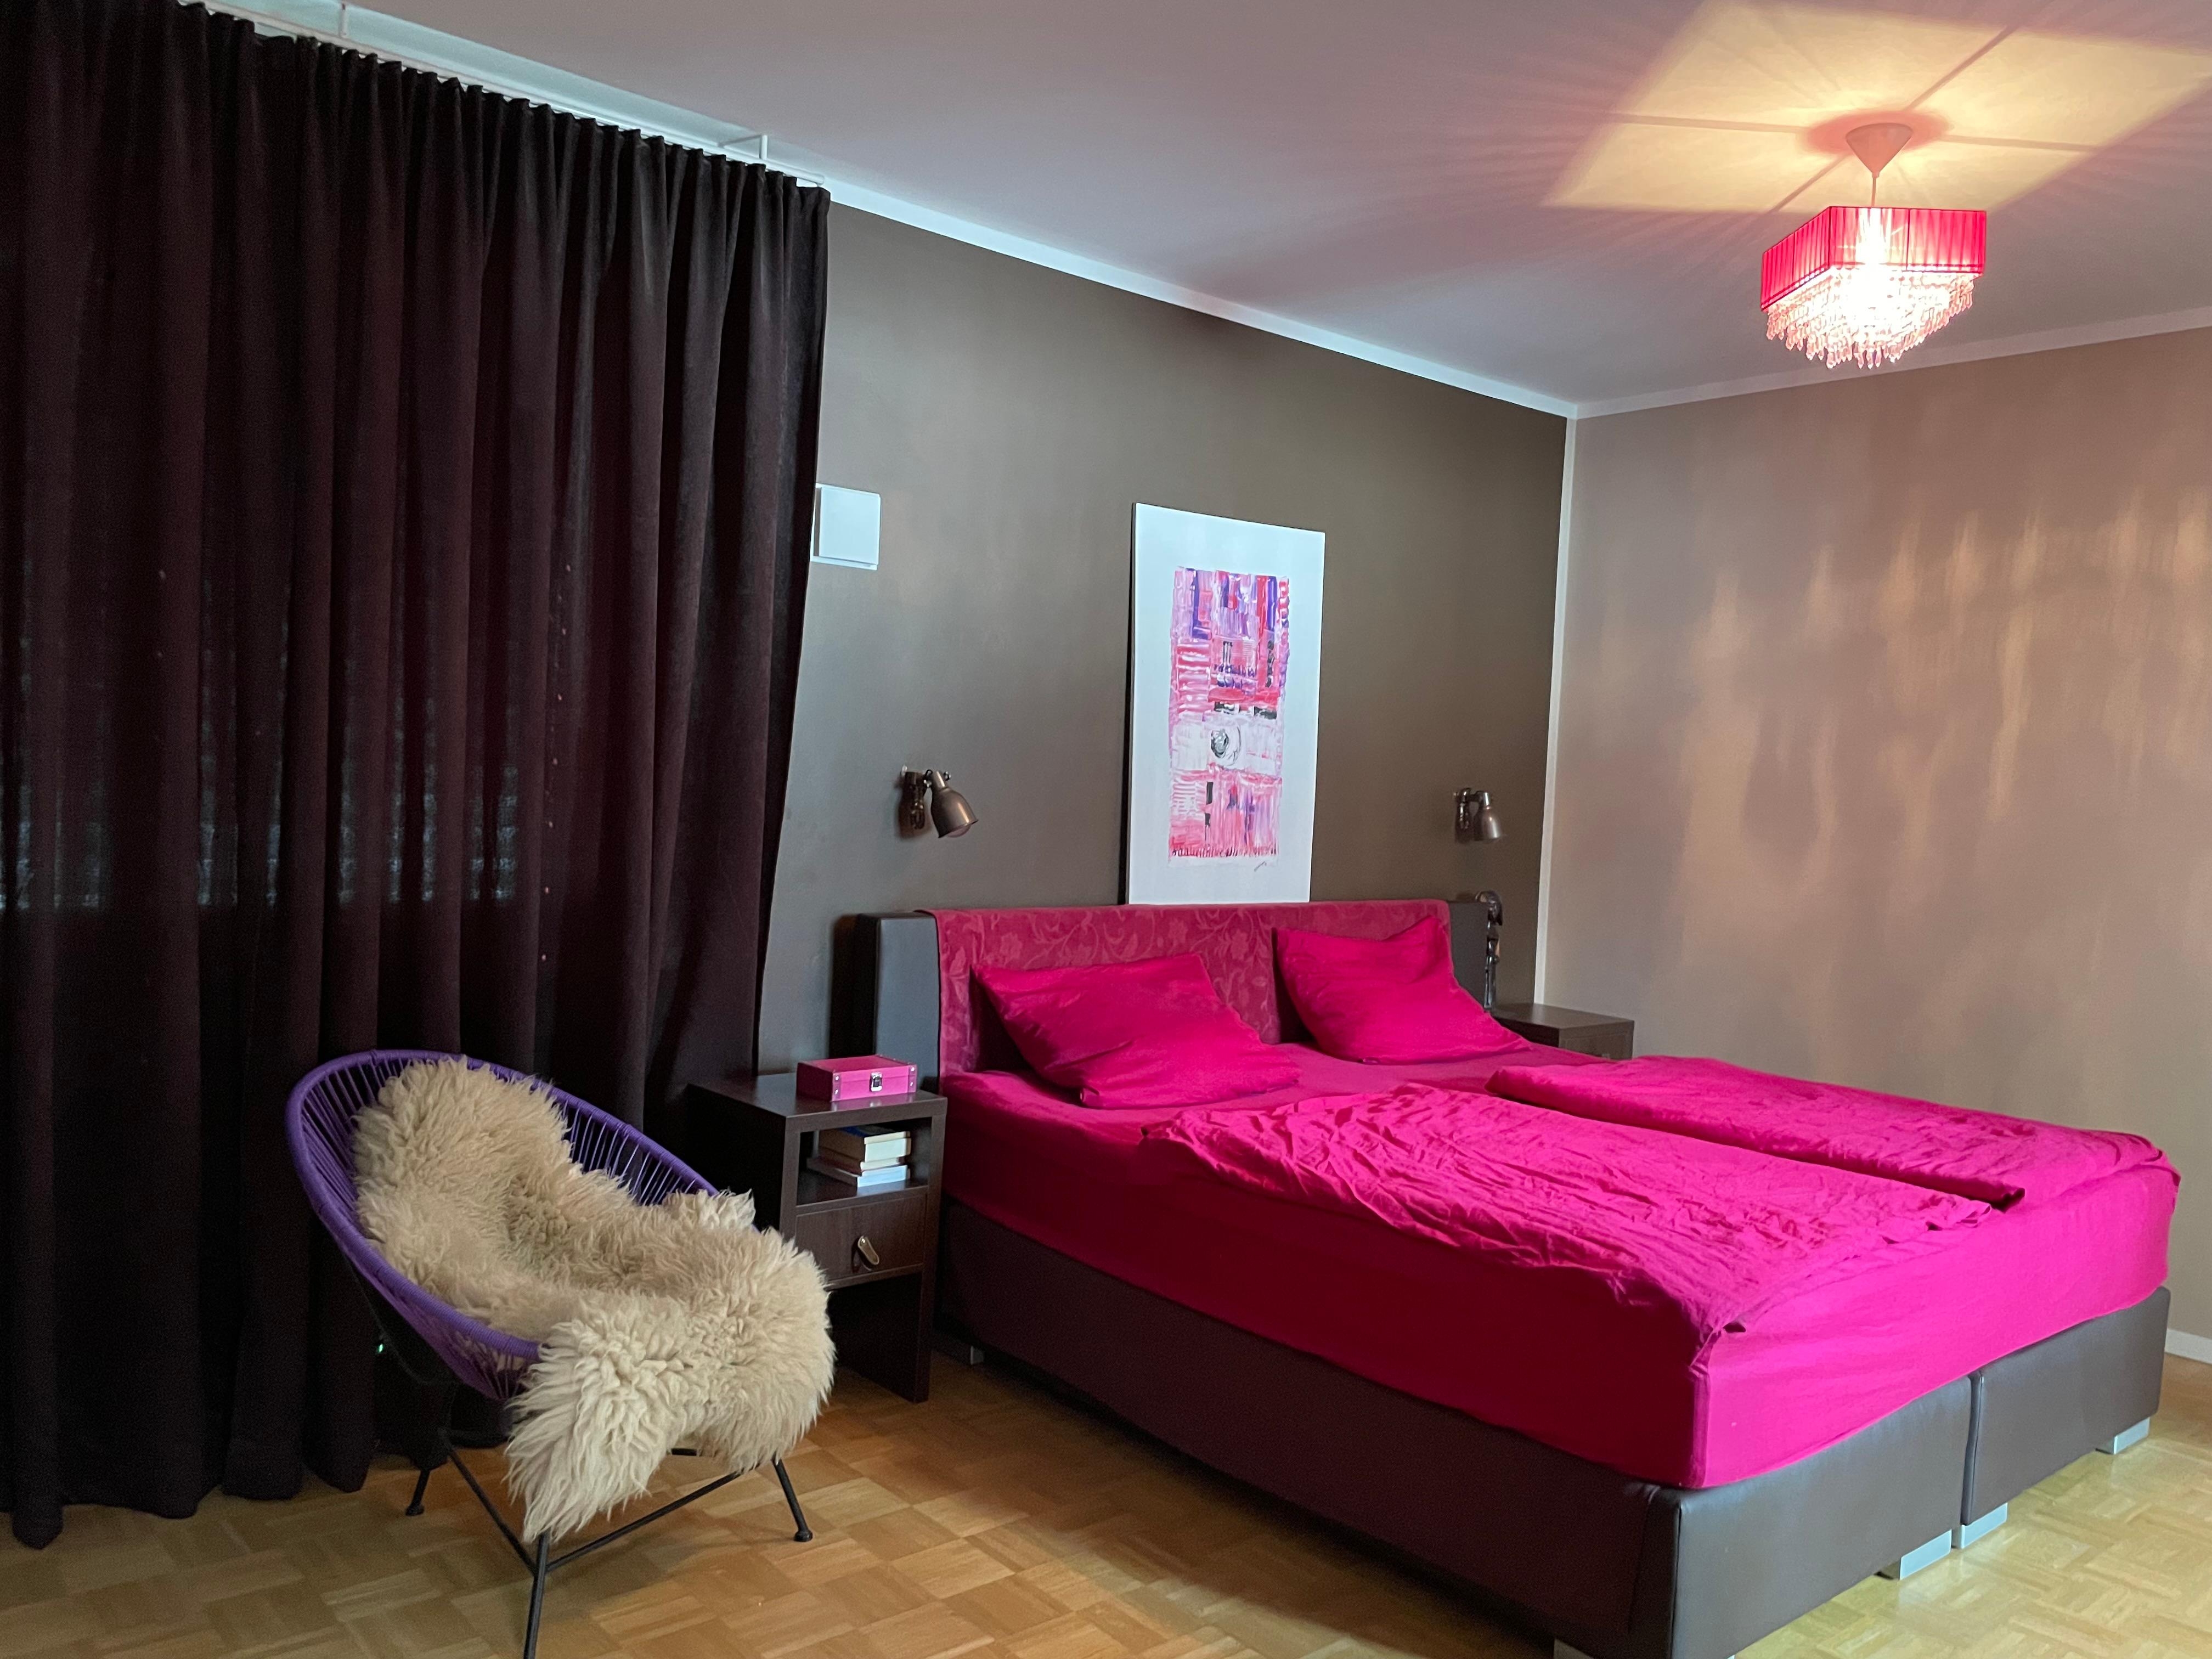 Ein dramatisches #Schlafzimmer in Braun mit einer Menge #Pink. 
#bett #Bettwäsche #kunst #schlafzimmerideen